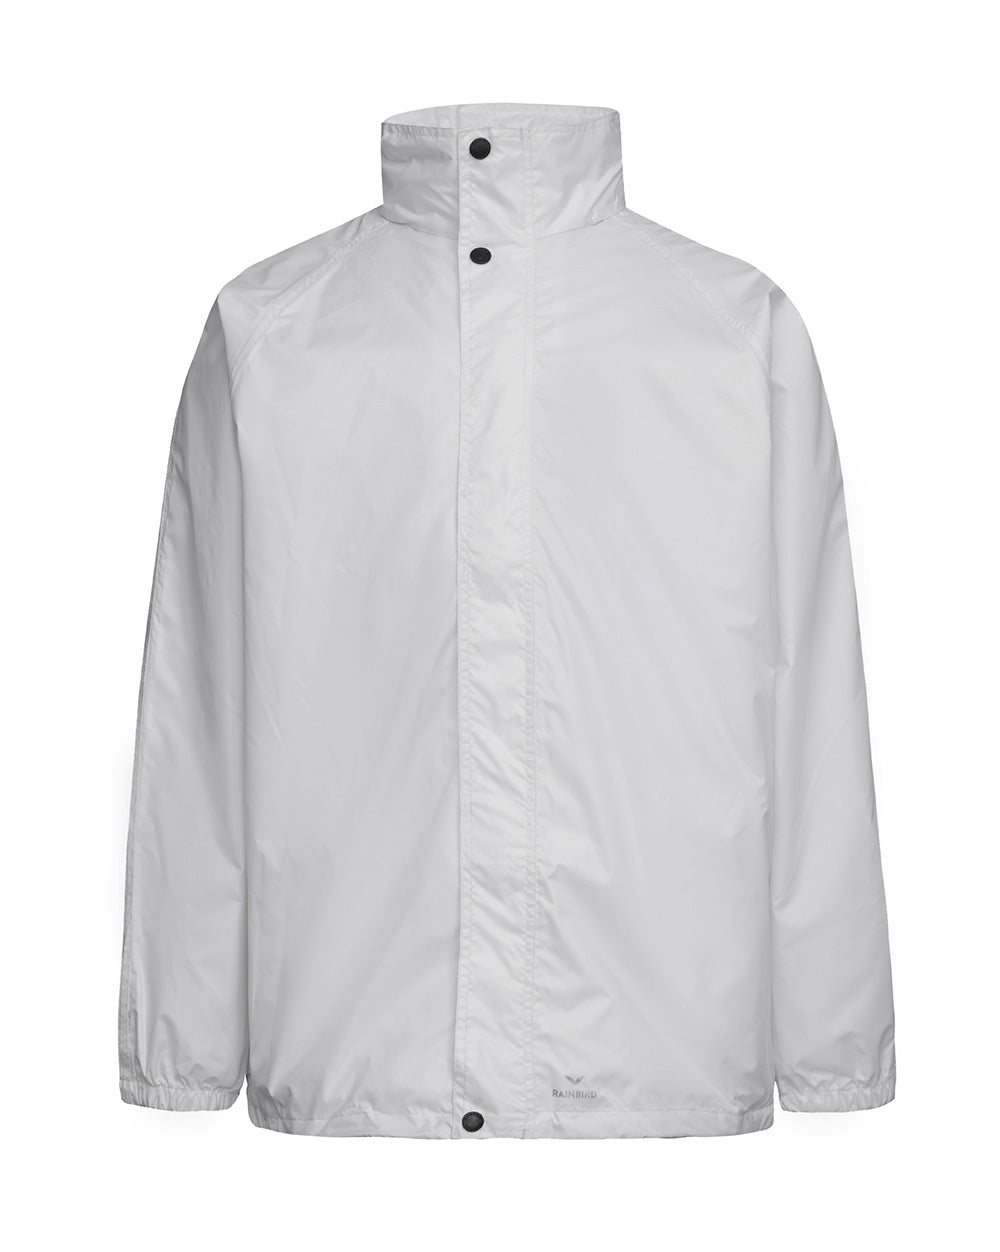 STOWaway Jacket in White